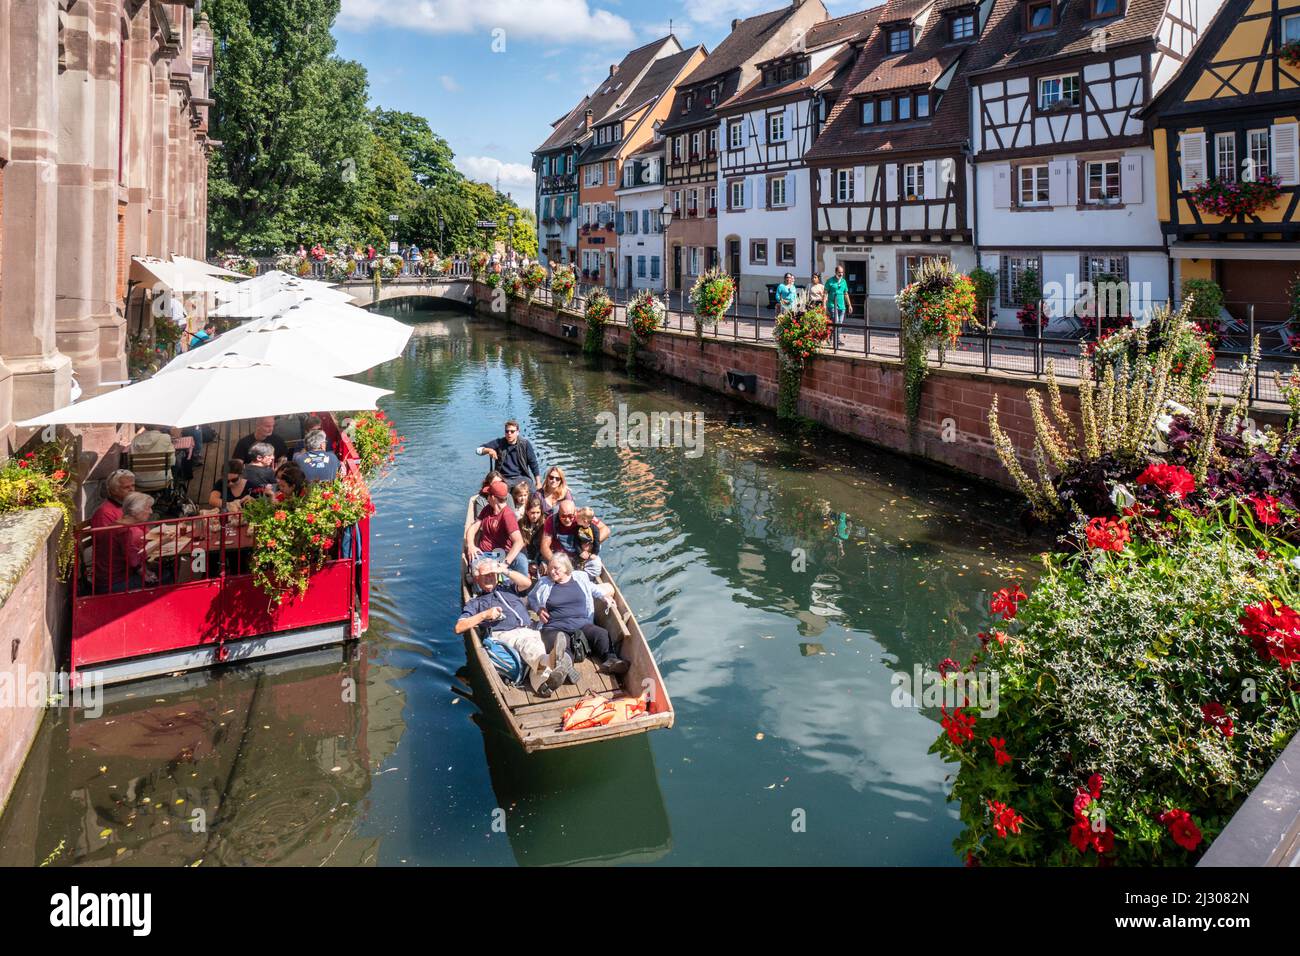 Maisons à colombages de la petite Venise, bateau en bois avec touristes, canal, Colmar, Alsace, France, Europe Banque D'Images